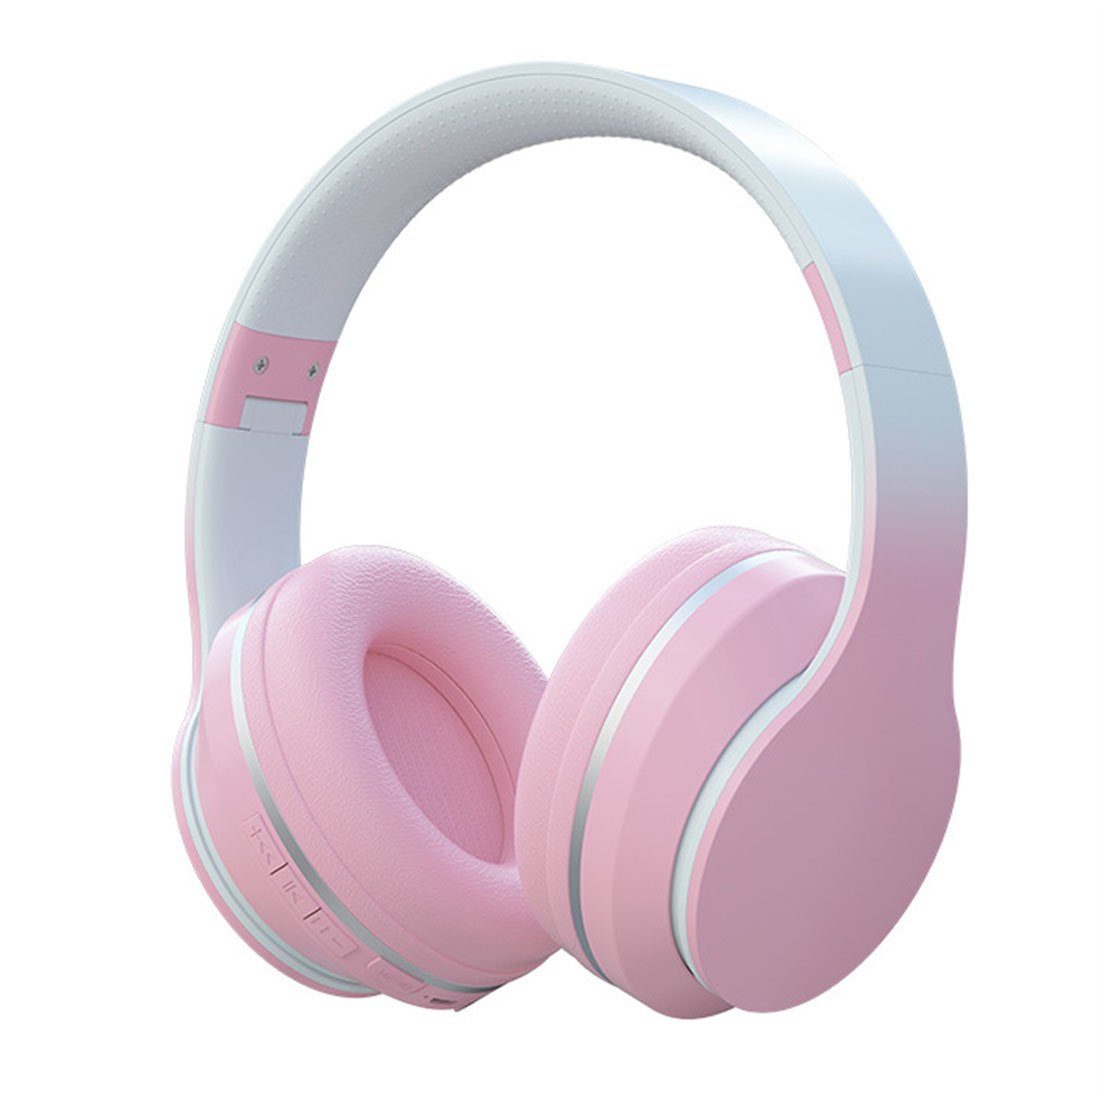 DÖRÖY Drahtloses Bluetooth-Headset mit Farbverlauf, Gaming-Headset, Headset Bluetooth-Kopfhörer Rosa